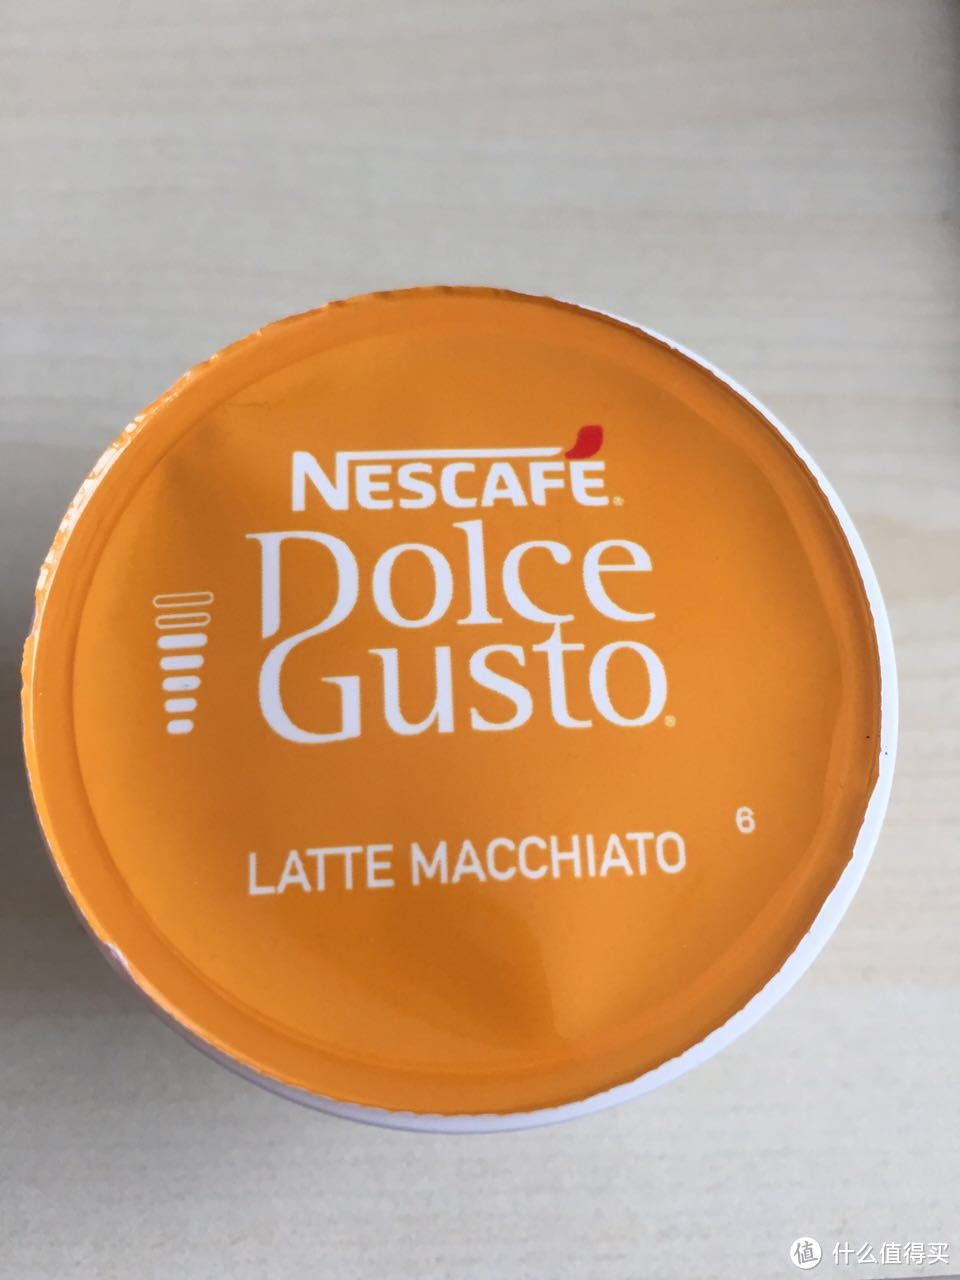 入门级别的胶囊咖啡机 Dolce Gusto EDG305 入手尝鲜